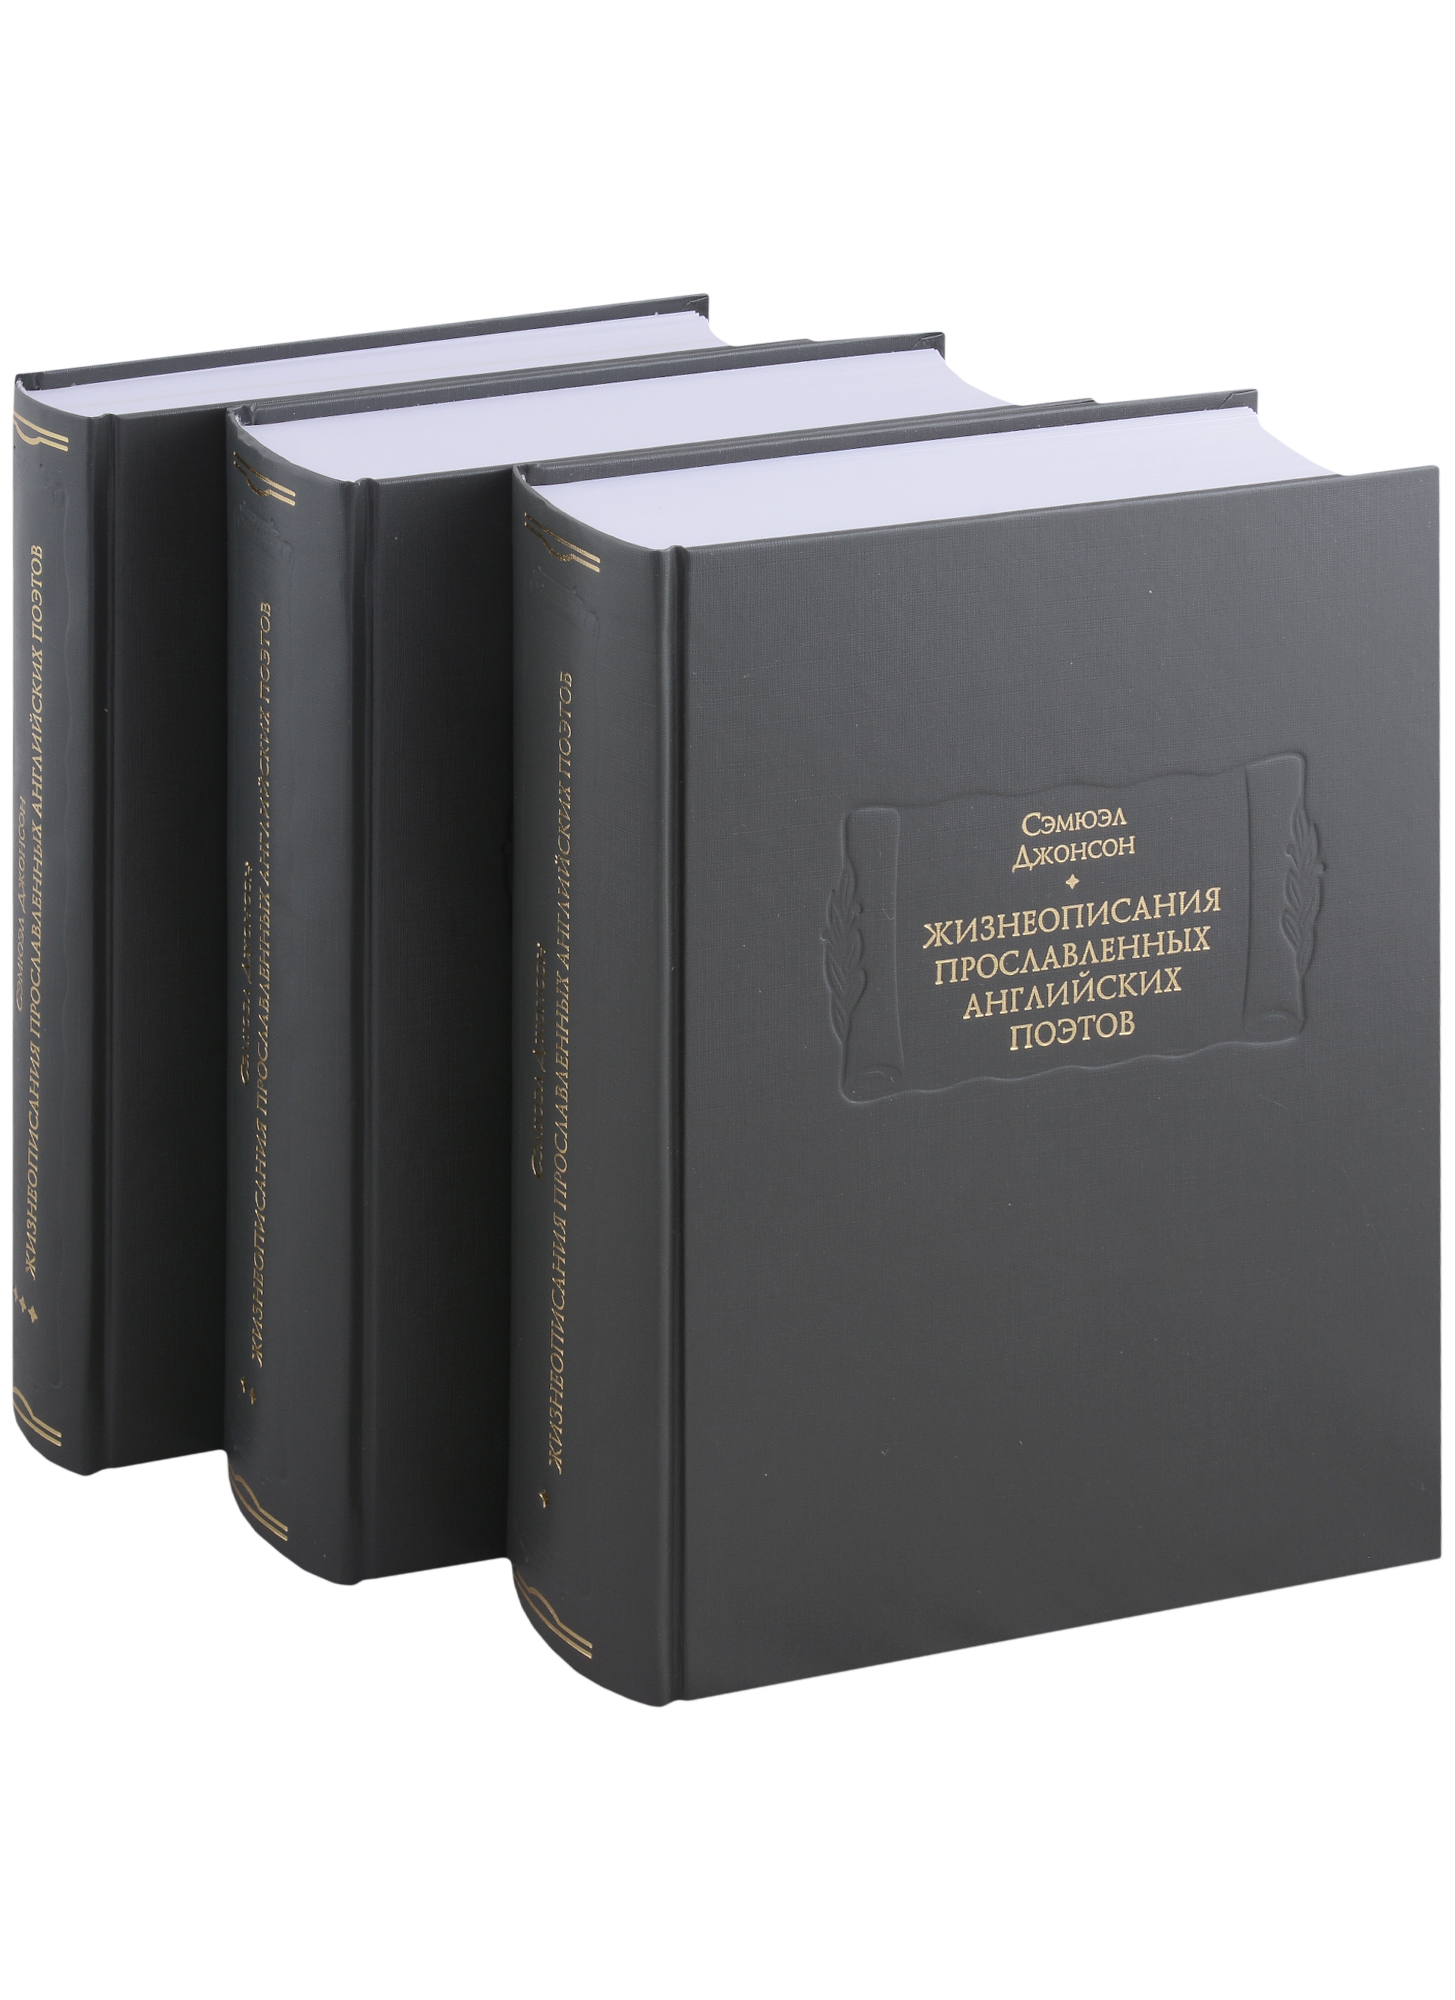 Джонсон Сэмюэл Жизнеописания прославленных английских поэтов и критические обозрения их сочинений, в трех книгах (комплект из 3 книг)